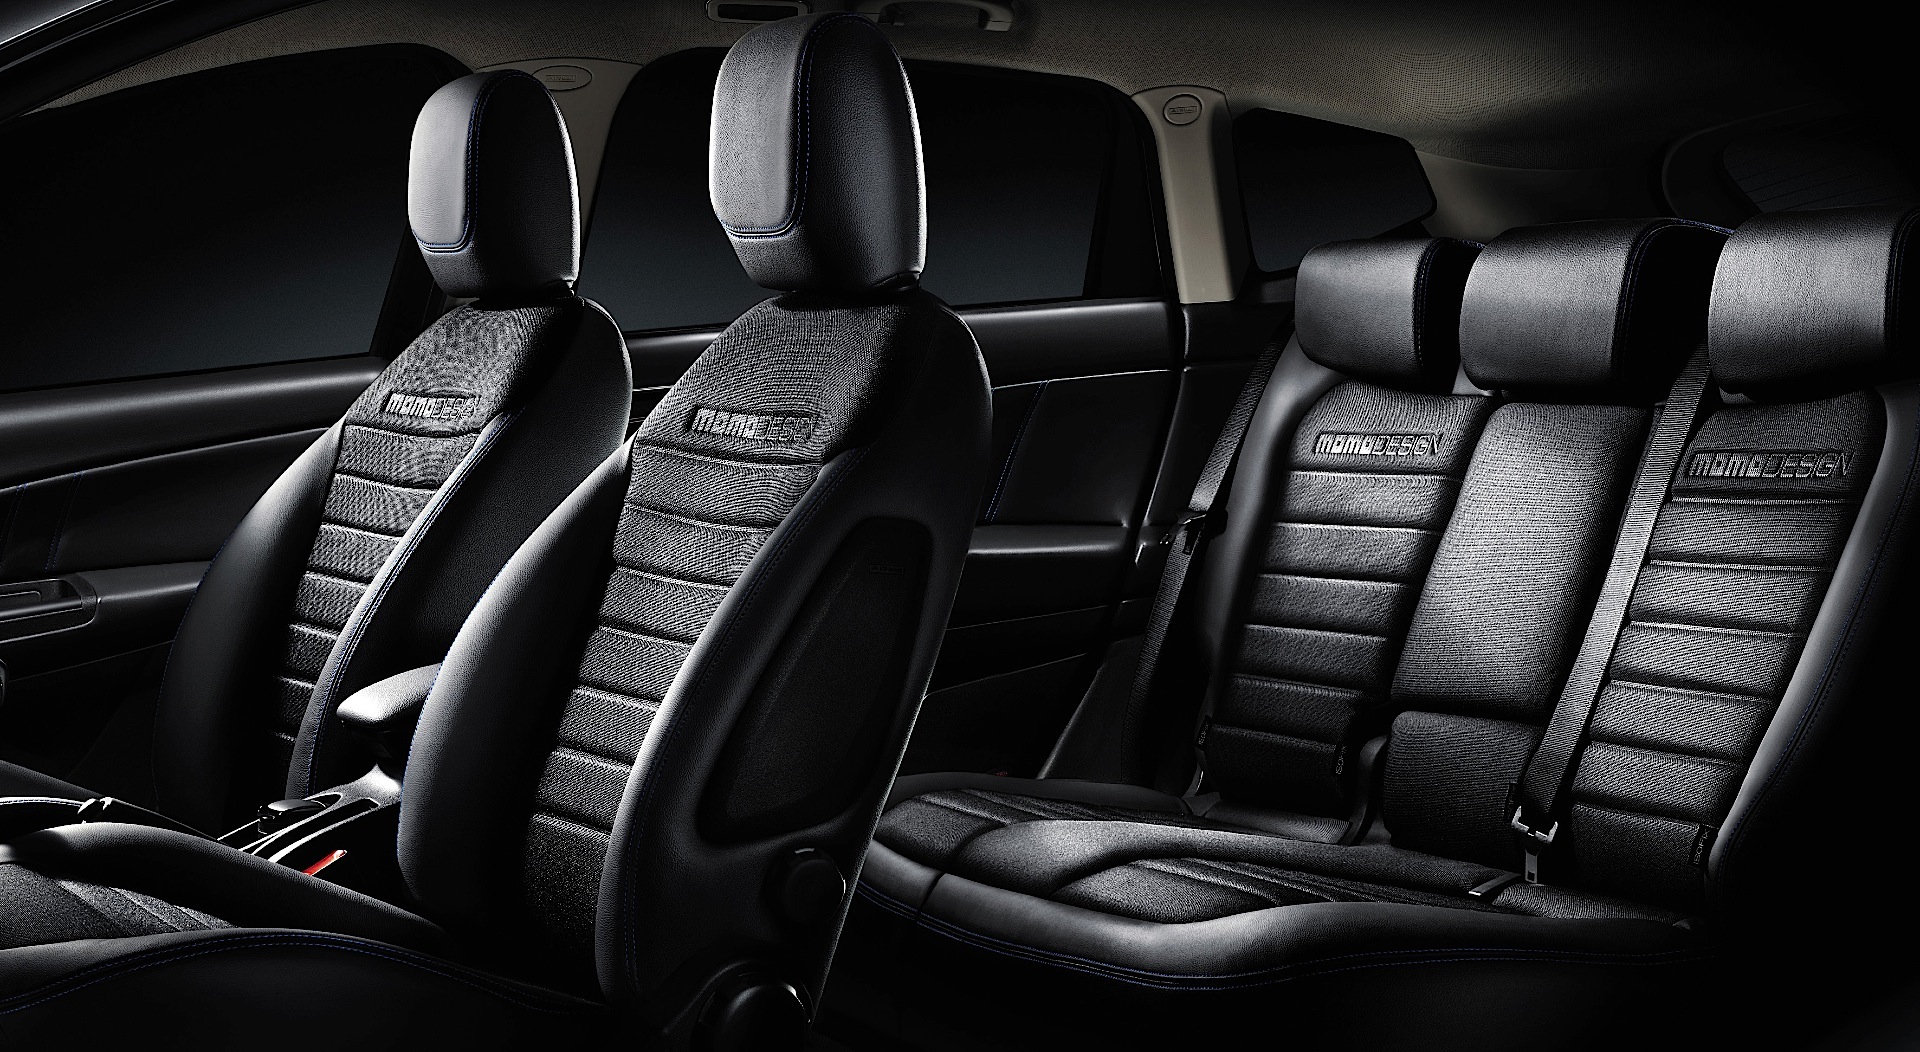 Lancia Delta interior - Seats